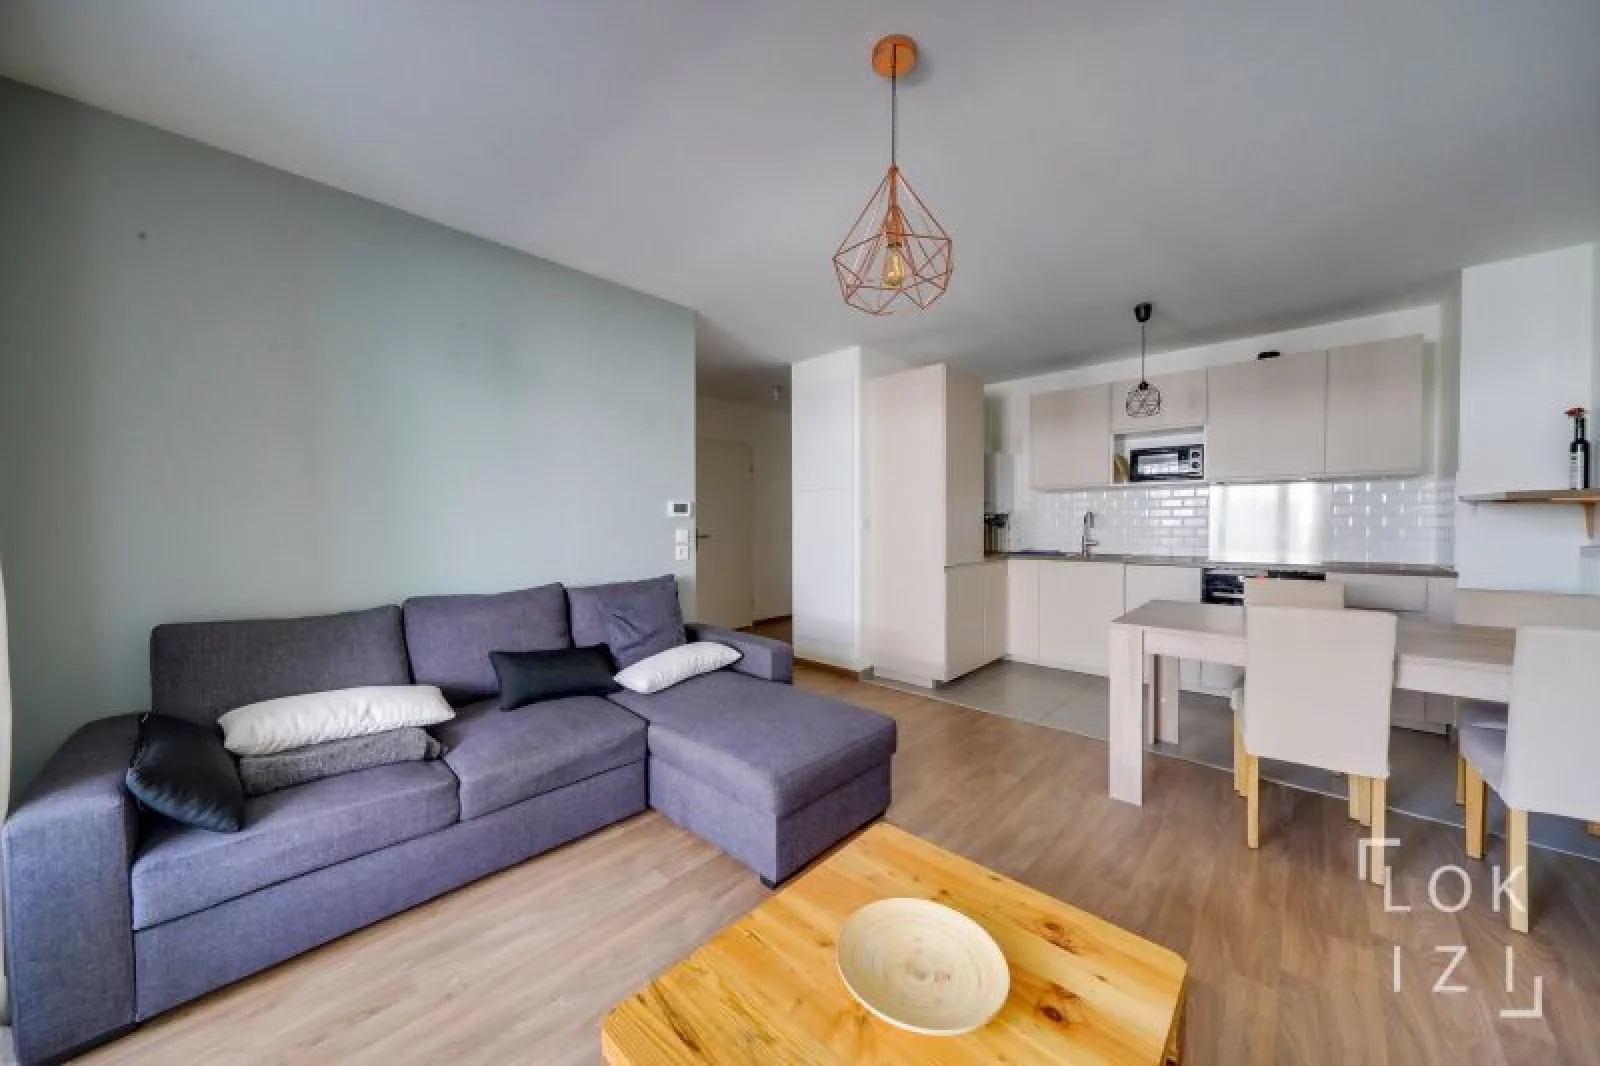 Location appartement meublé 2 pièces 44m² (Bordeaux / Chartrons)